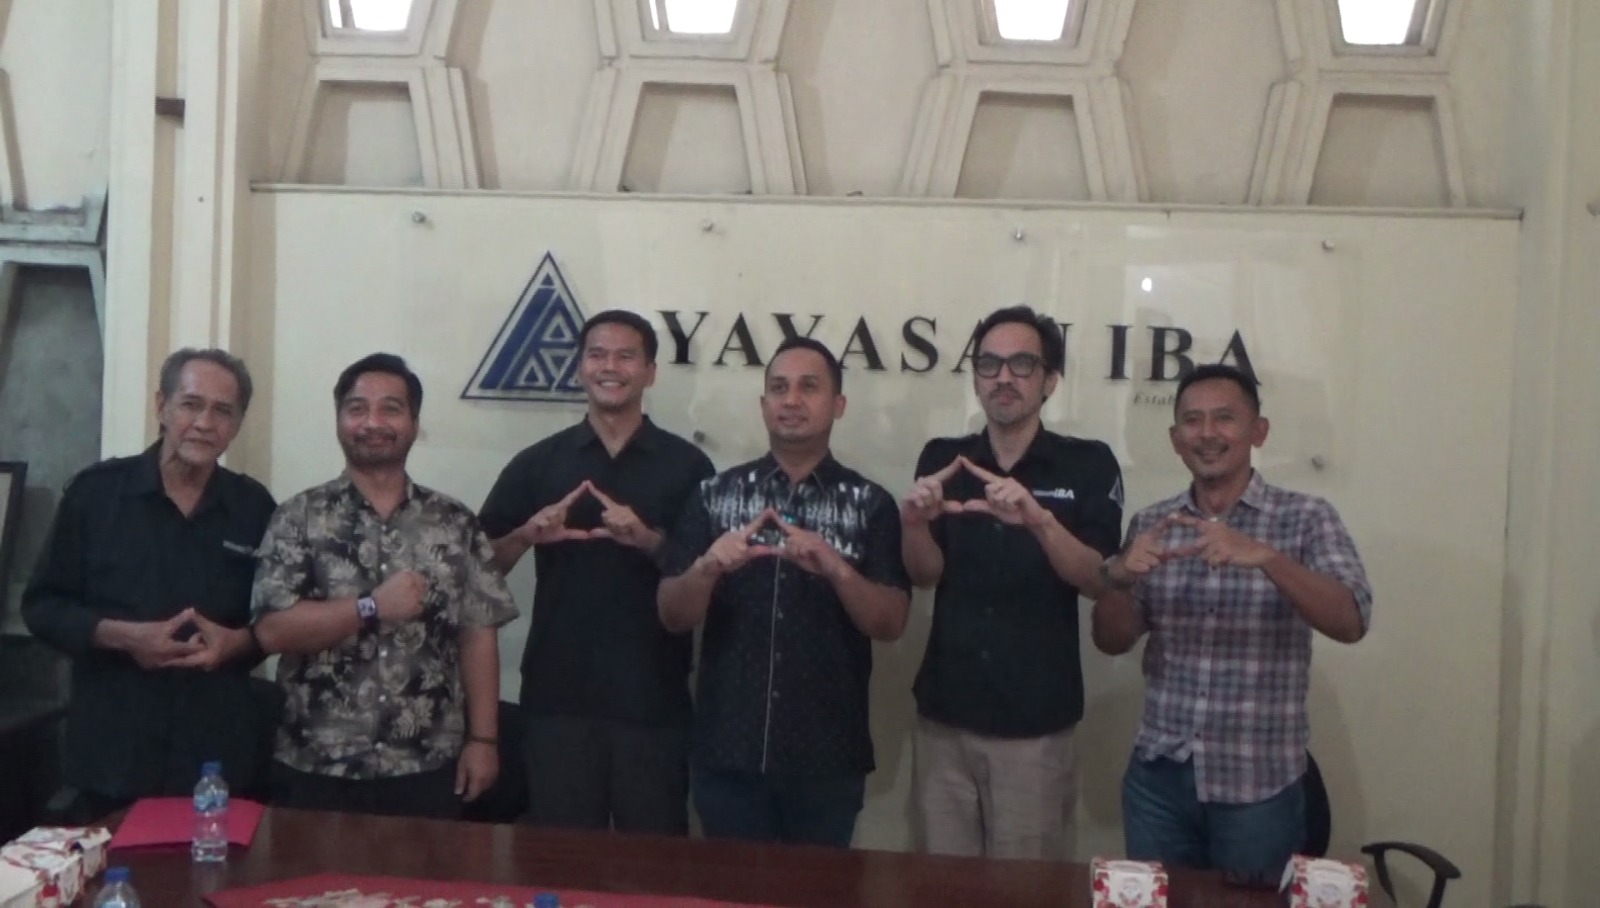 Anggota DPRD Kota Palembang M. Hidayat Melakulan Kunjungan Reses ke Yayasan IBA Palembang